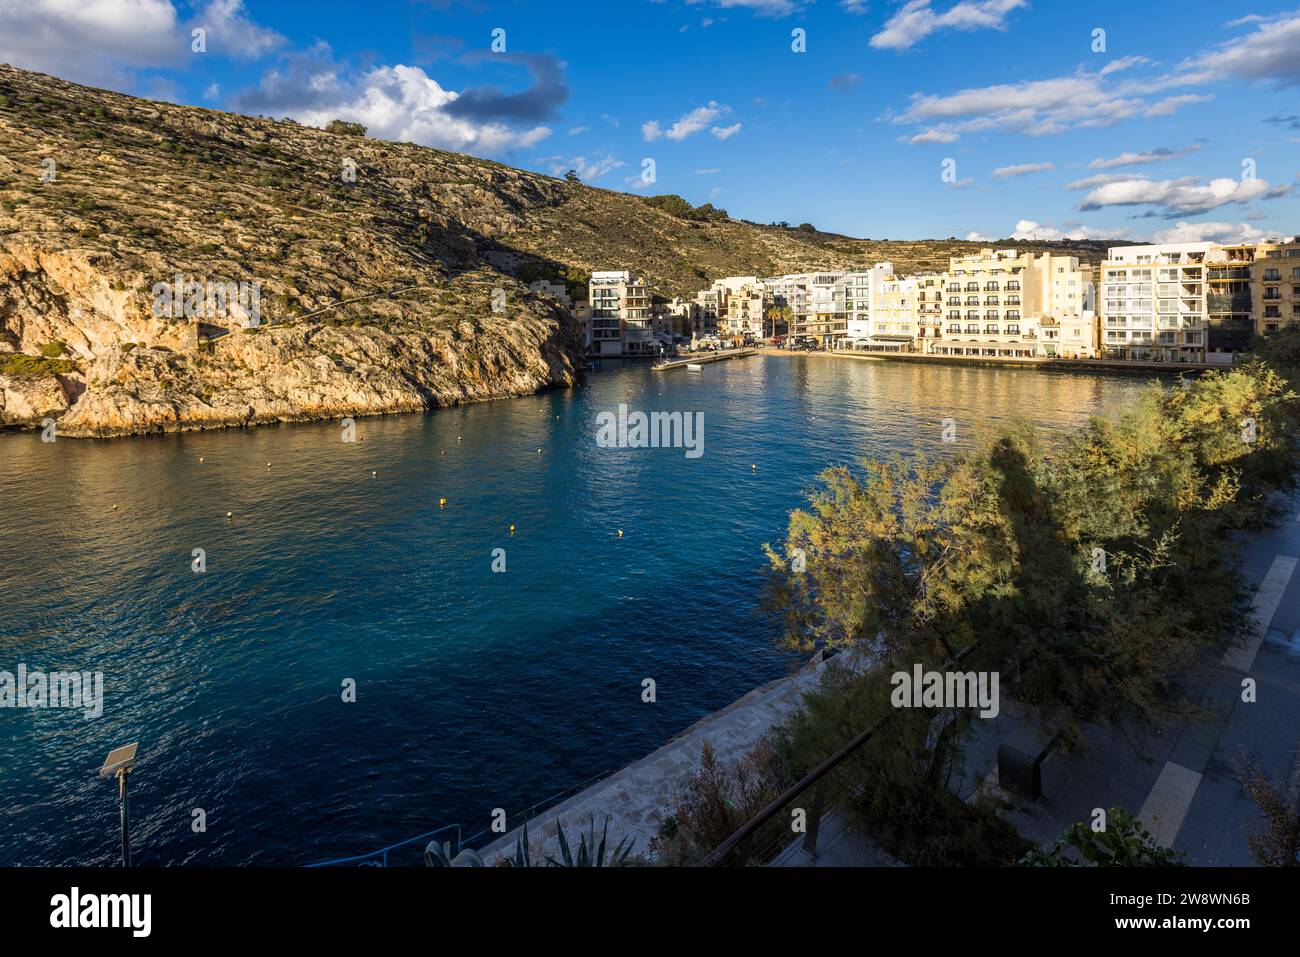 Der Hafen von Xlendi liegt in einer natürlichen Bucht. Xlendi, Gozo, Malta Stockfoto